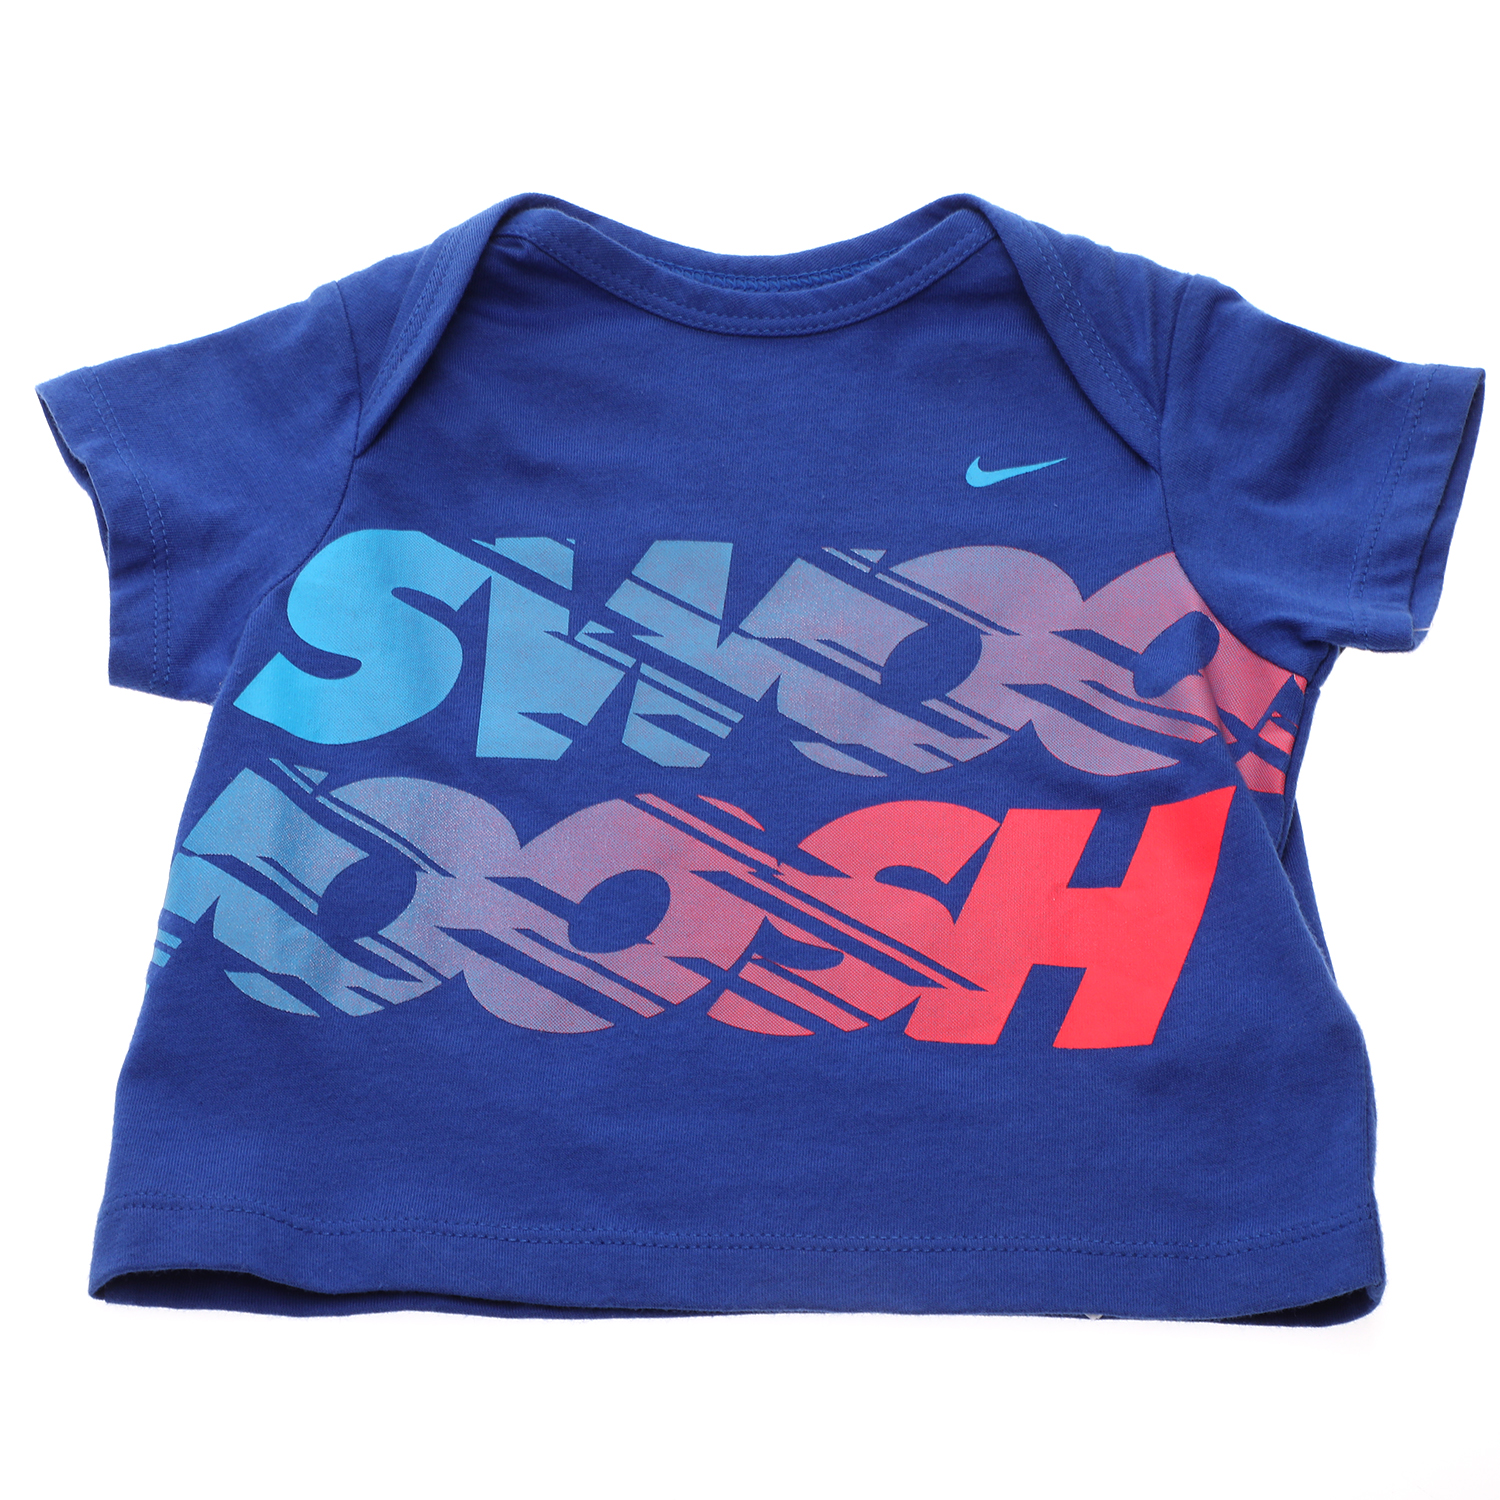 Παιδικά/Baby/Ρούχα/Μπλούζες NIKE - Βρεφικό t-shirt NIKE GFX J SS TOP μπλε